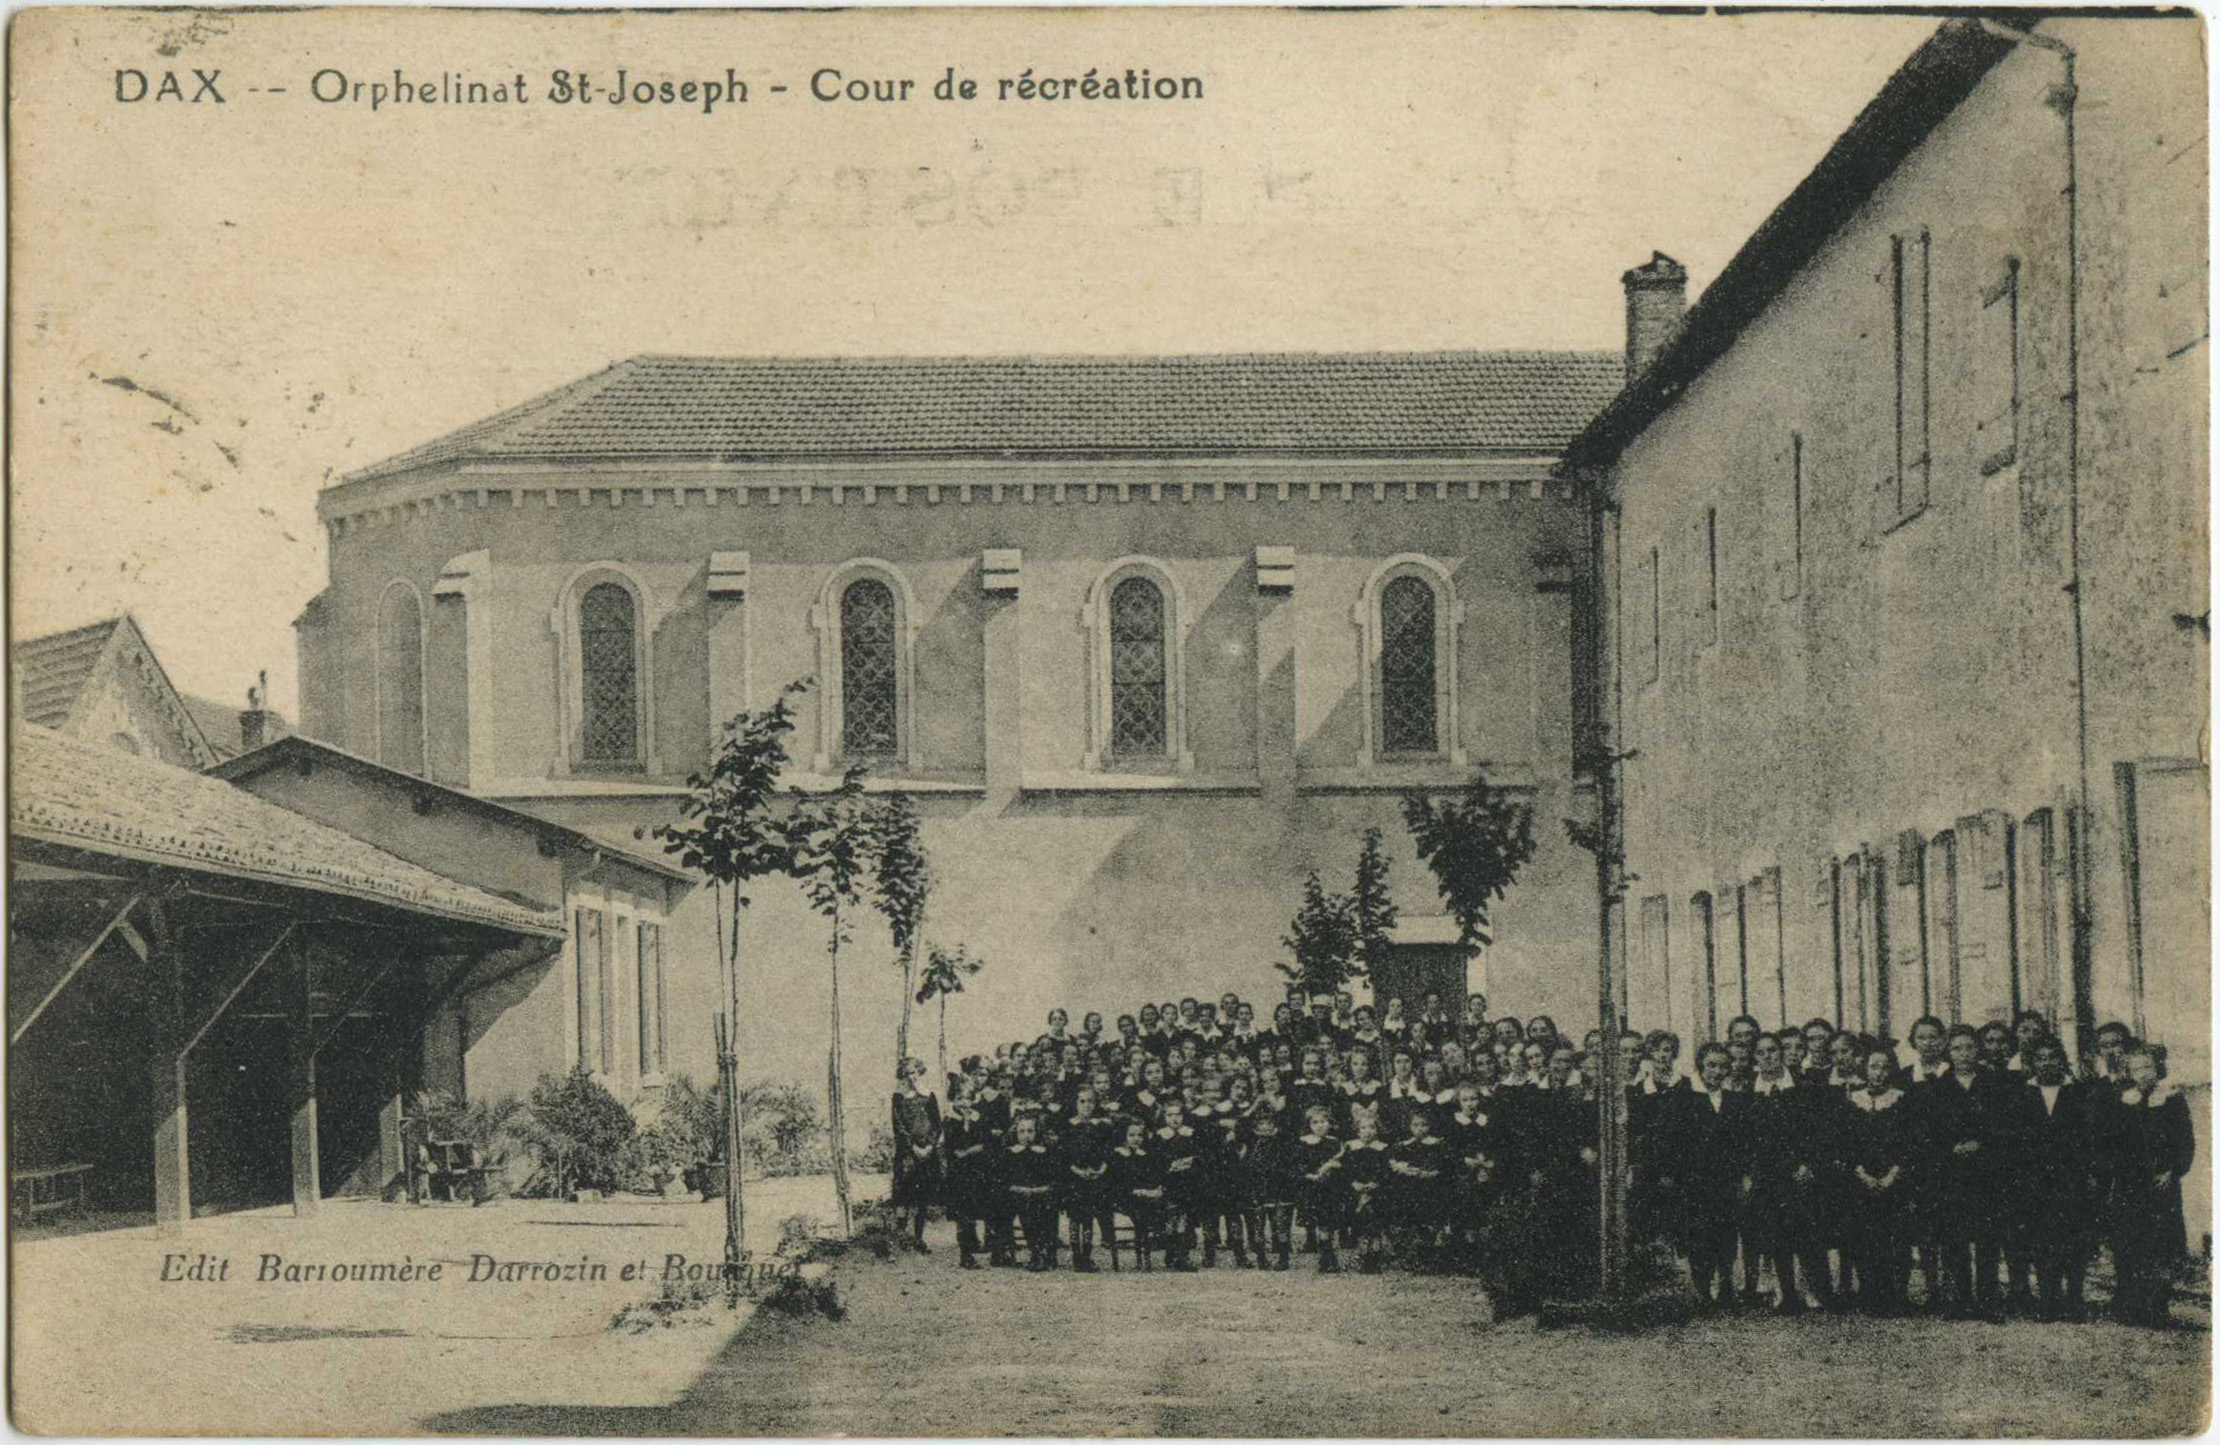 Dax - Orphelinat St-Joseph - Cour de récréation